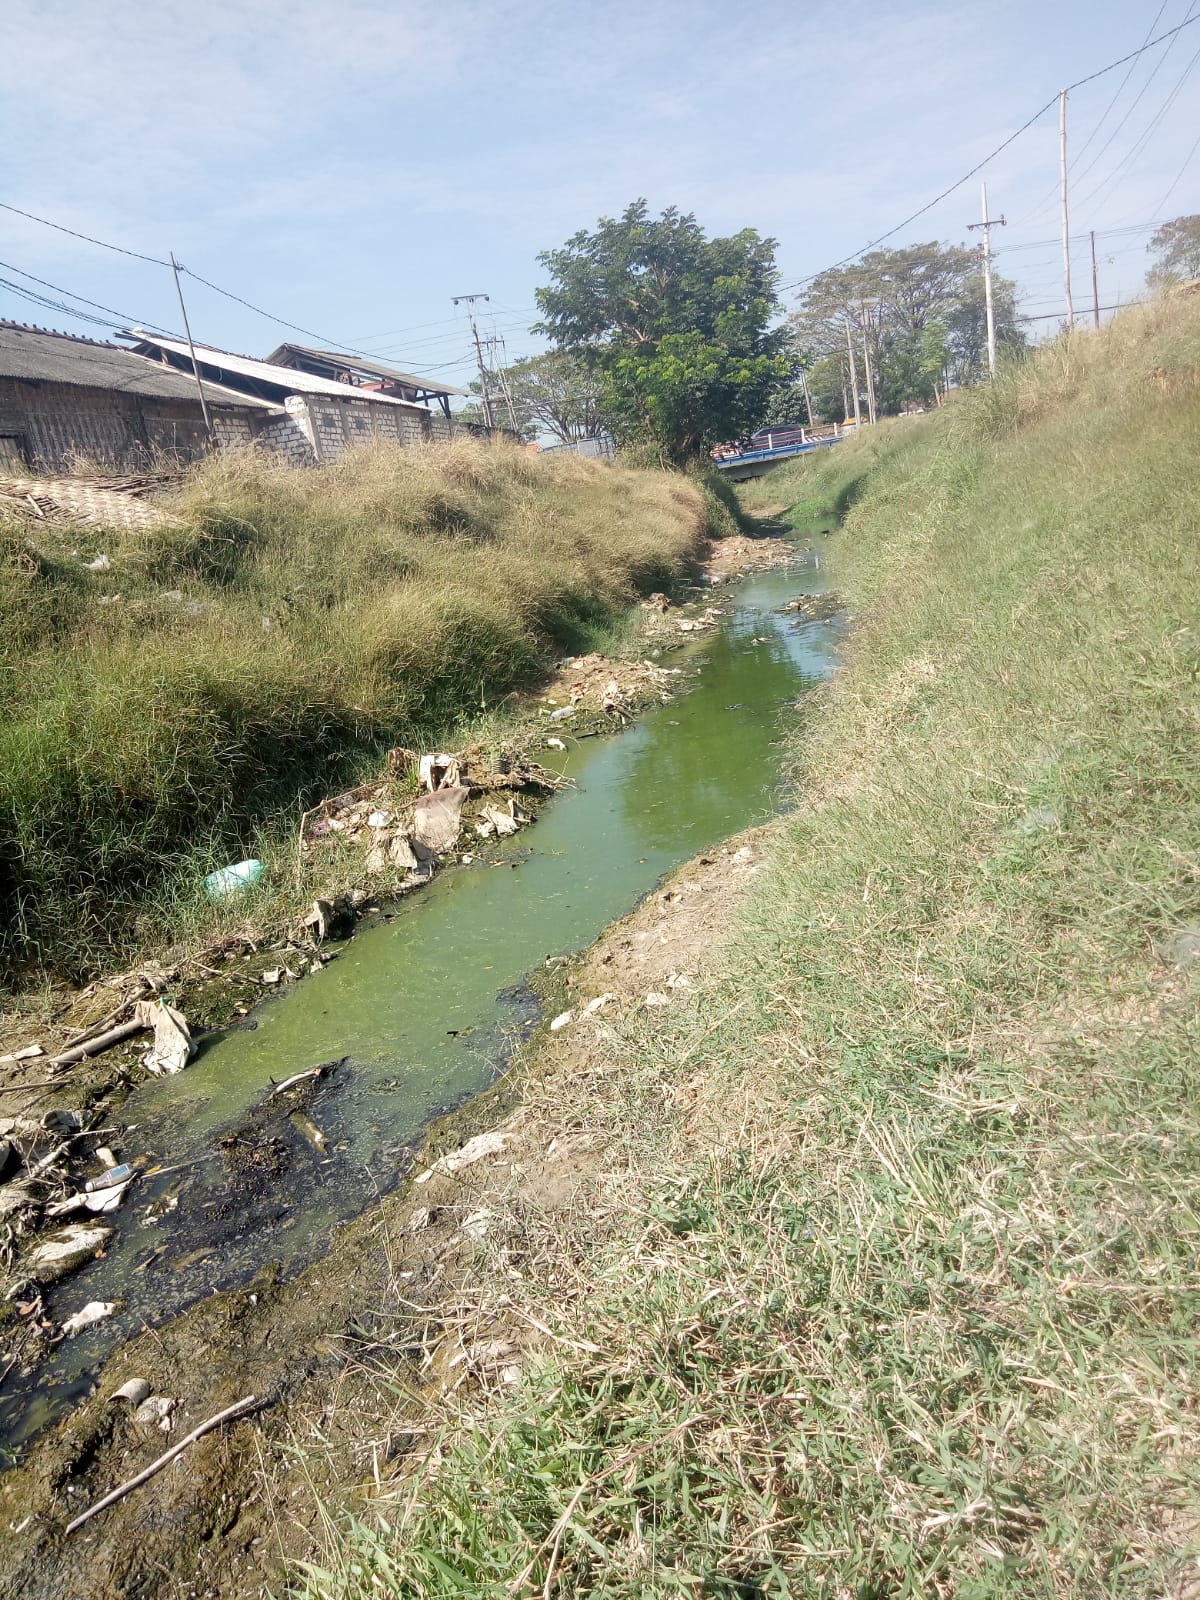 Anggota Dewan temukan sungai di Pati tercemar limbah, ancam petani garam